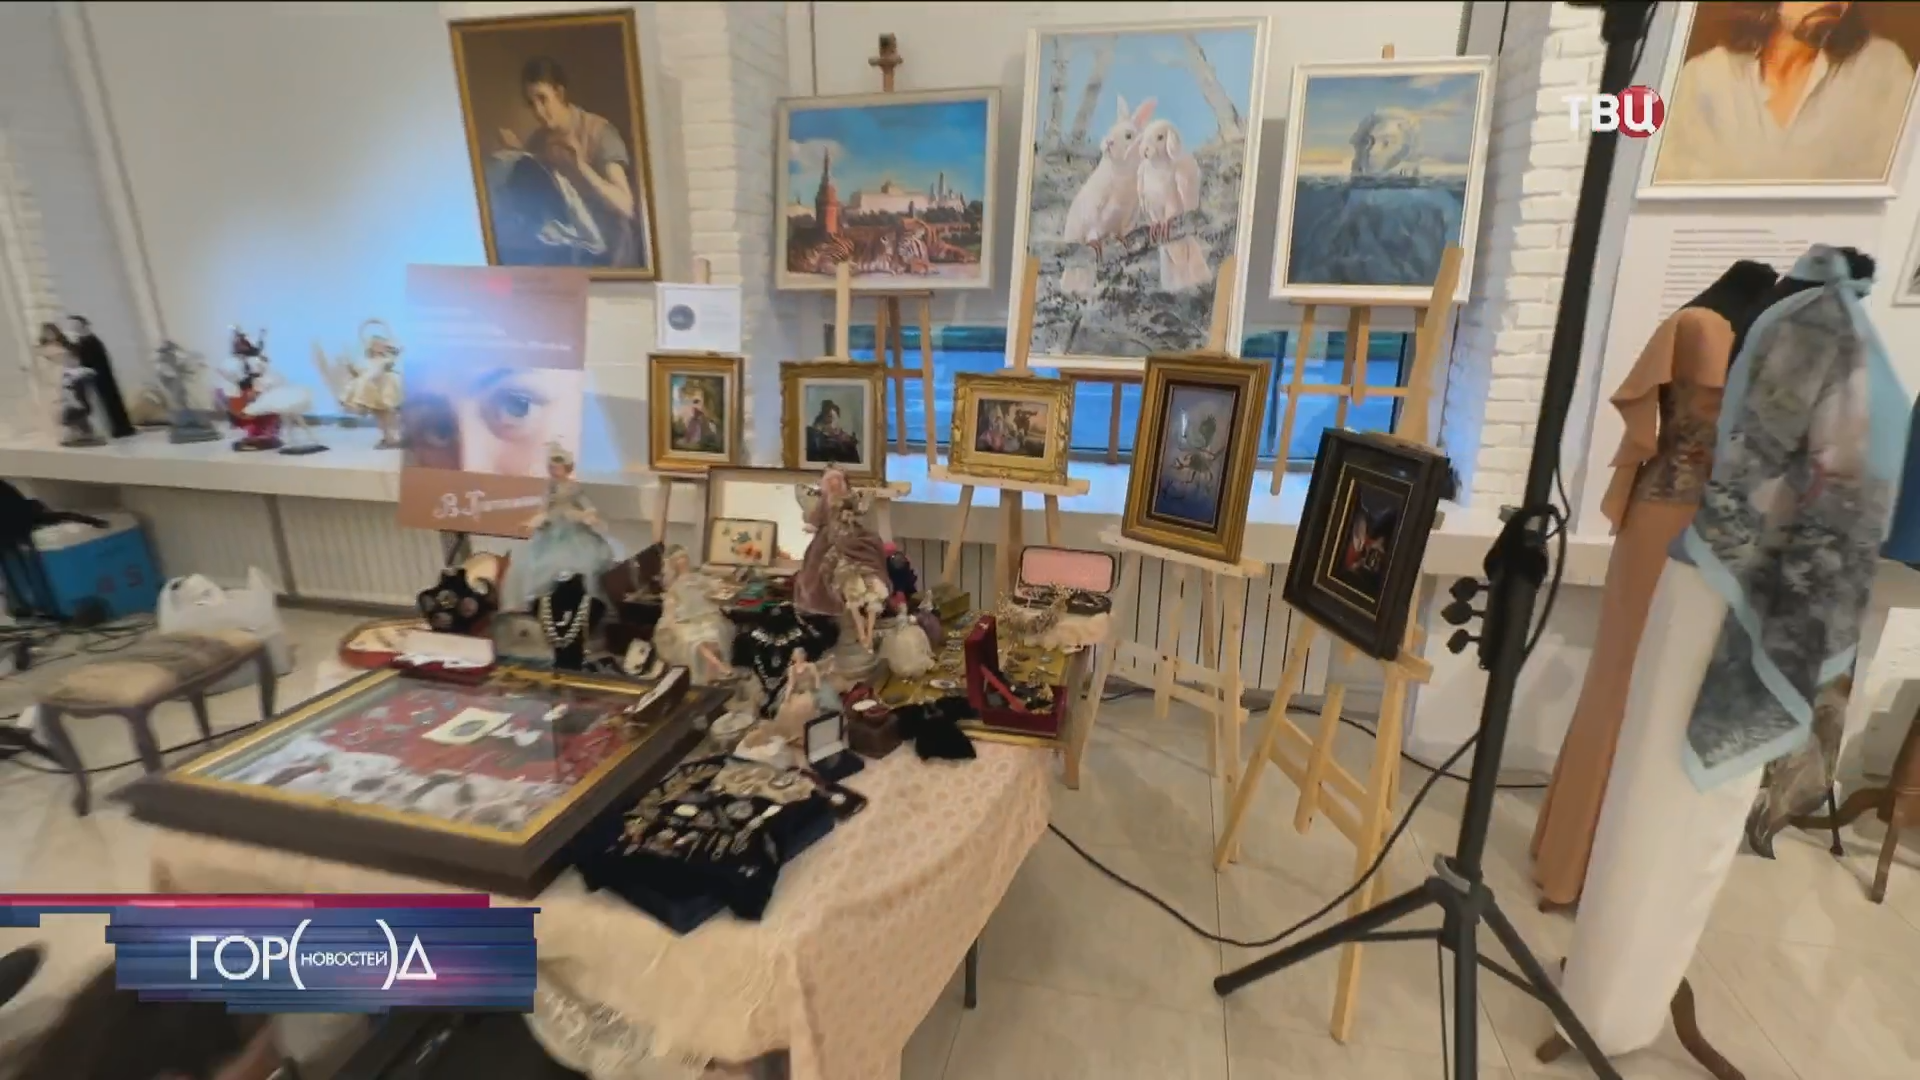 Первая встреча творческого проекта "Галерея художников" состоялась в Москве / Город новостей на ТВЦ